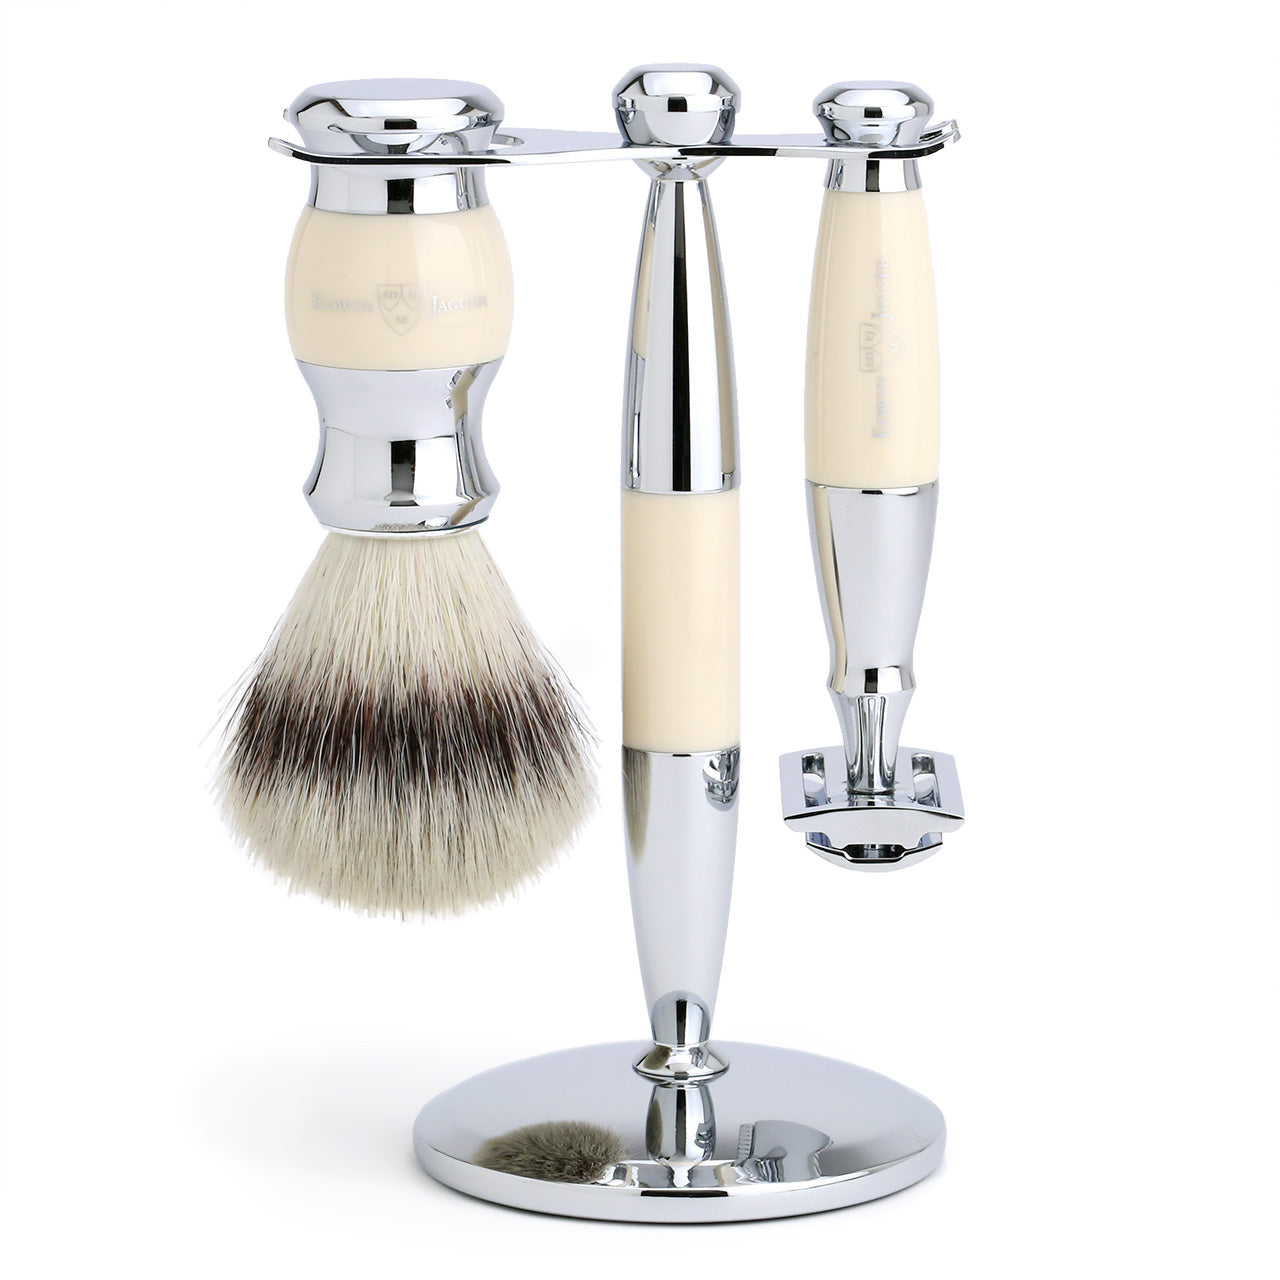 Edwin Jagger Shaving Set with Safety Razor, Shaving Brush and Stand - Imitation Ivory